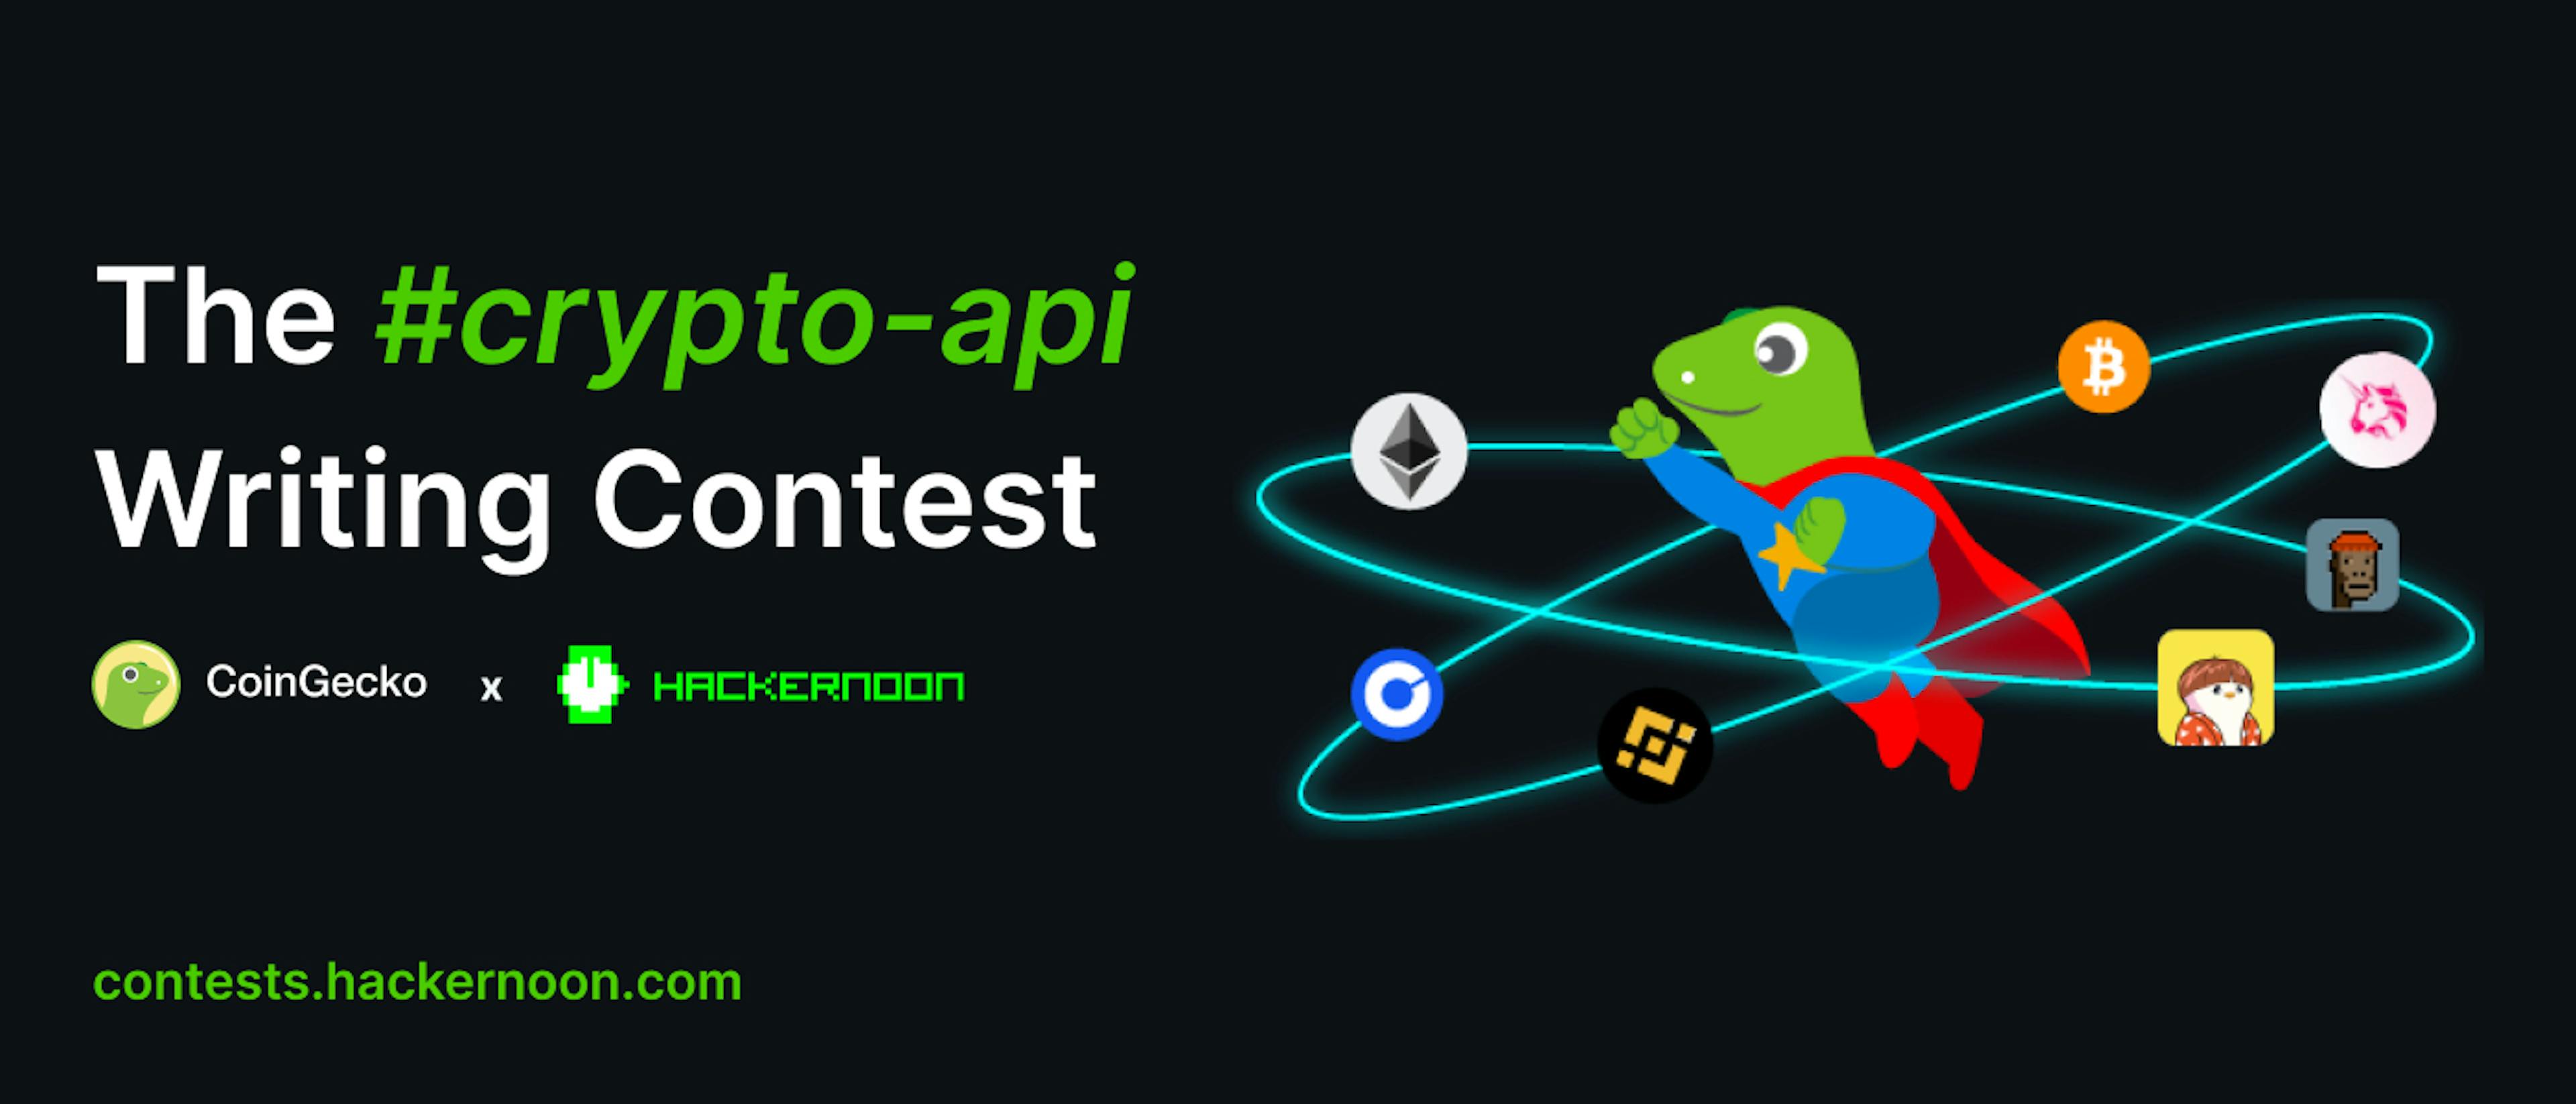 featured image - Der #crypto-api-Schreibwettbewerb von CoinGecko und HackerNoon